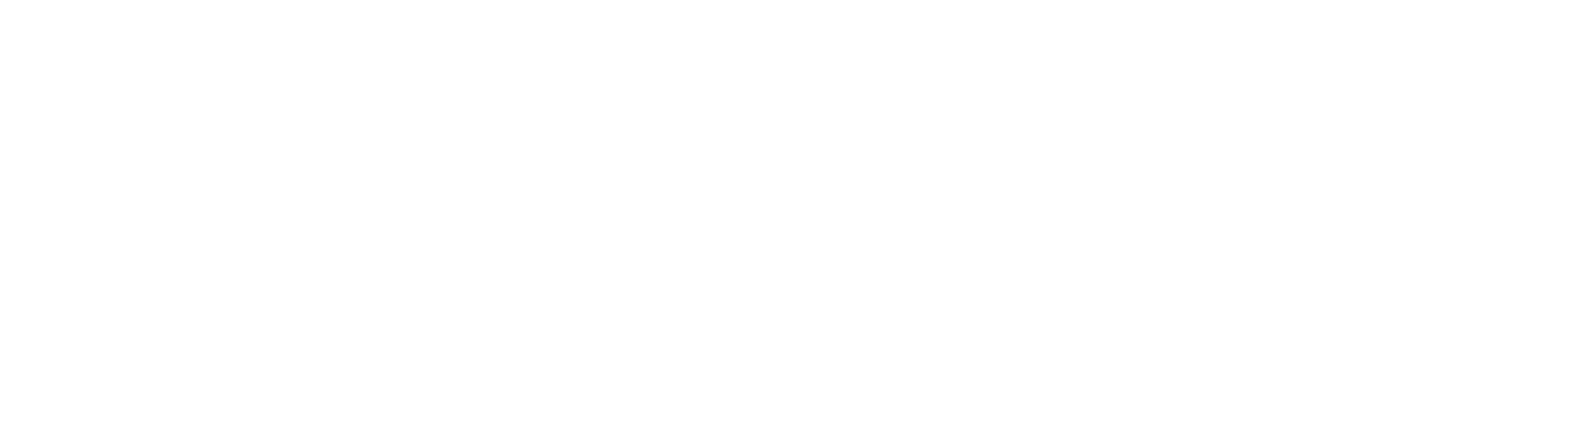 MoonLake Immunotherapeutics Logo groß für dunkle Hintergründe (transparentes PNG)